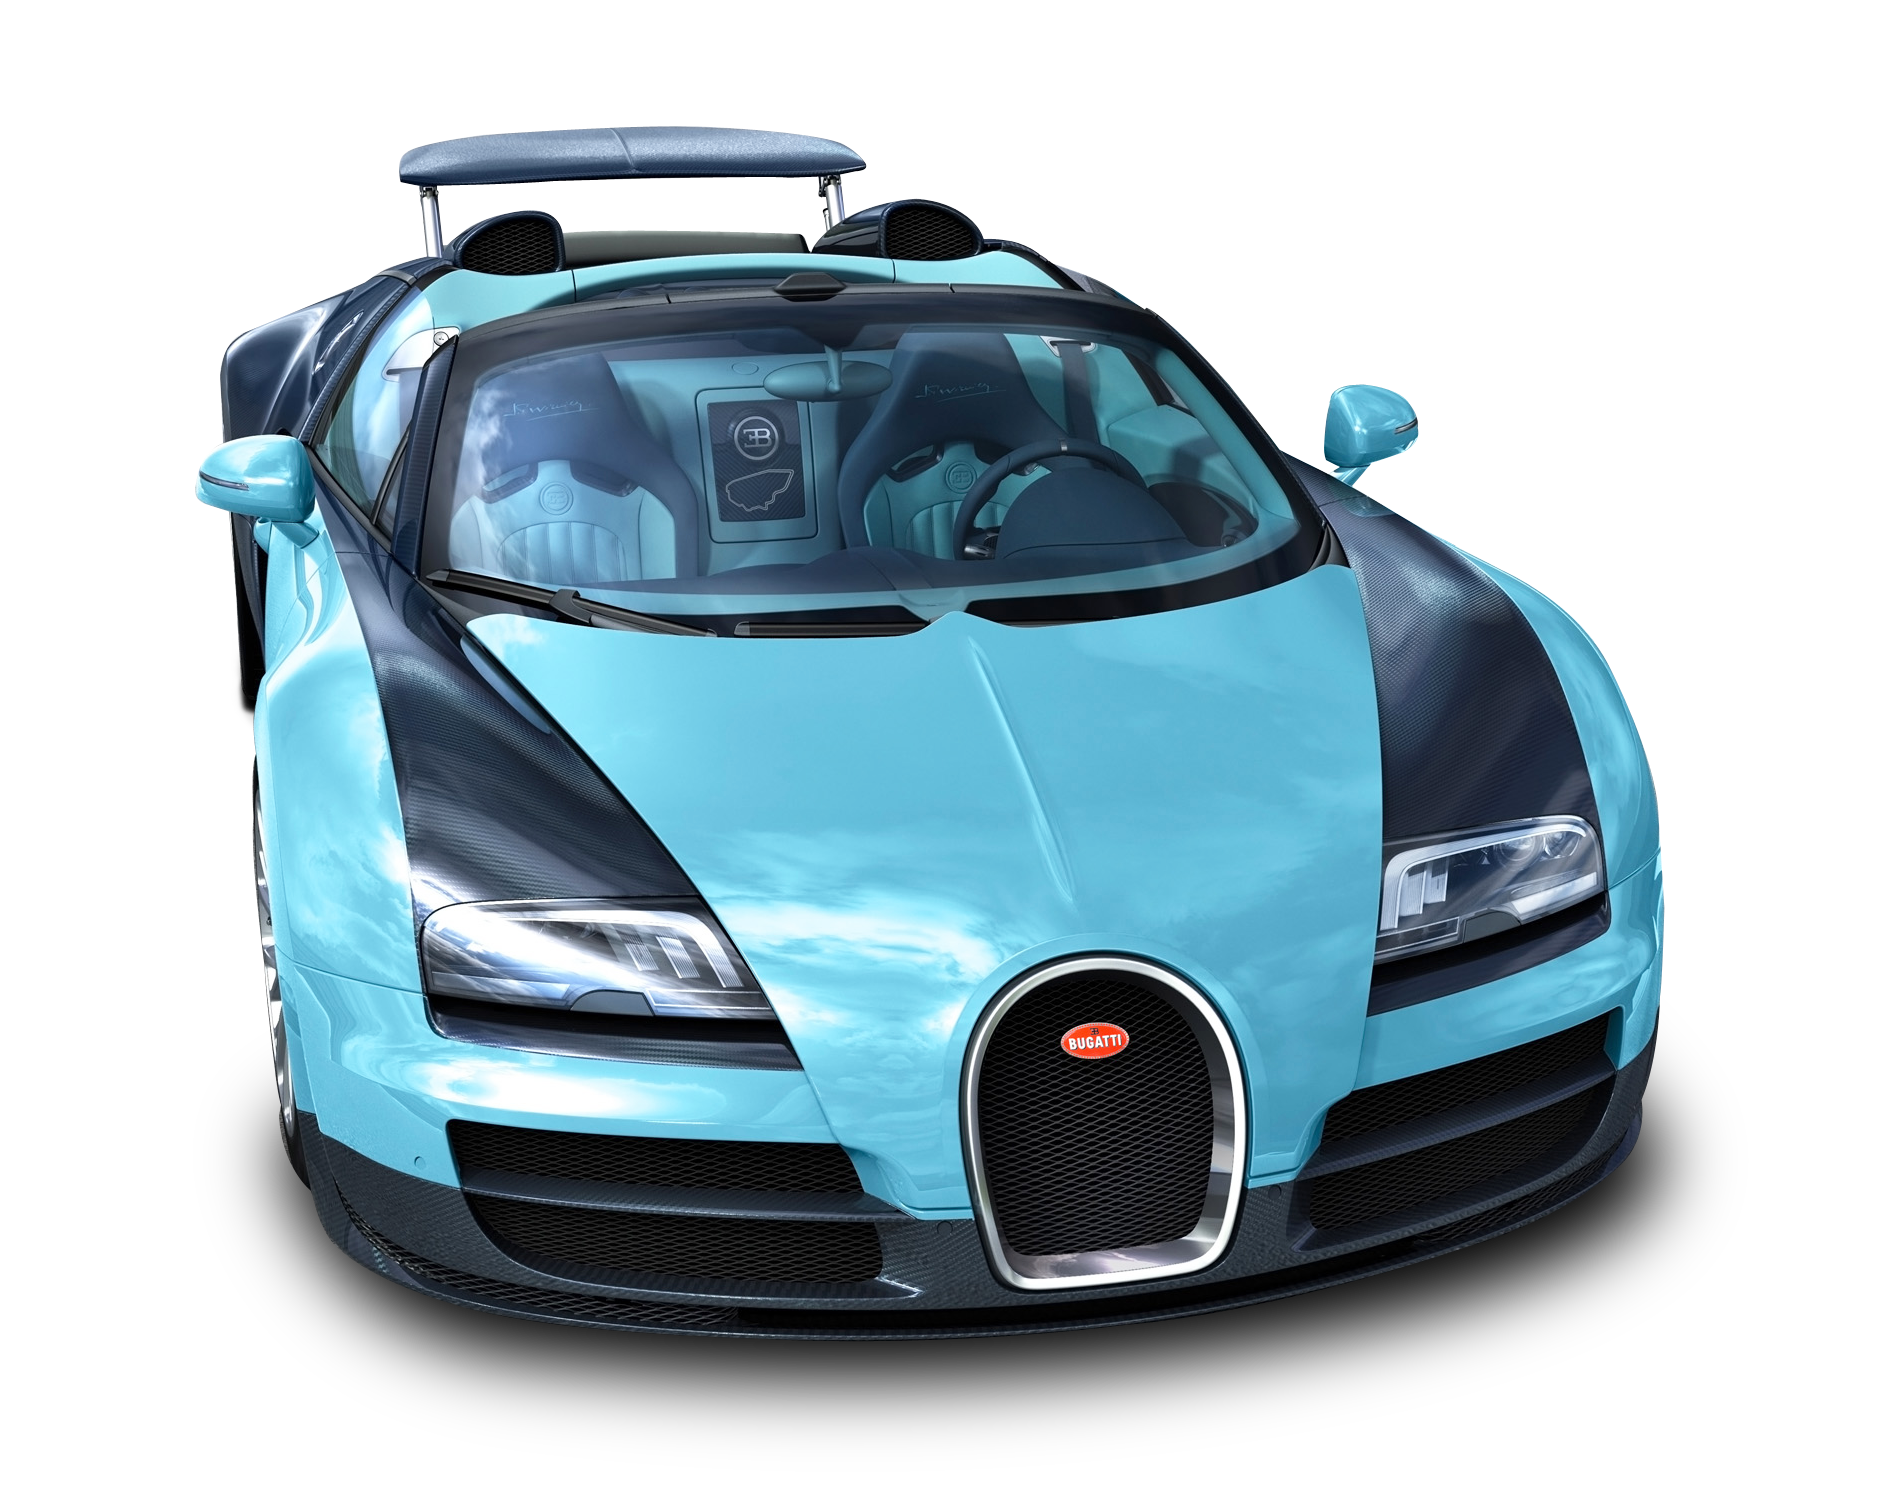 Bugatti Veyron PNG-PlusPNG.co